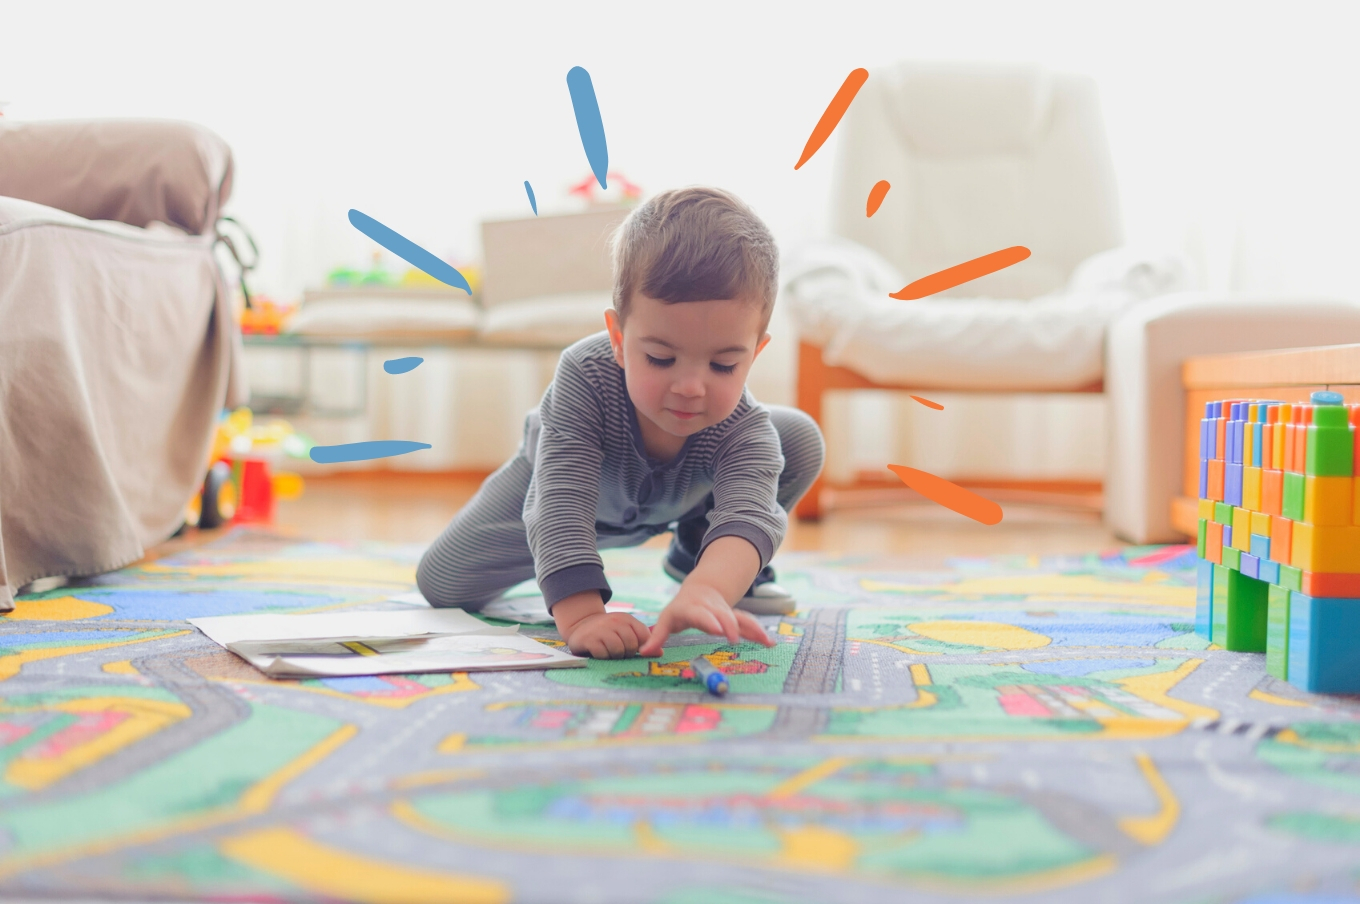 Menino, por volta de 3 anos, brincando sozinho ajoelhado no tapete colorido.